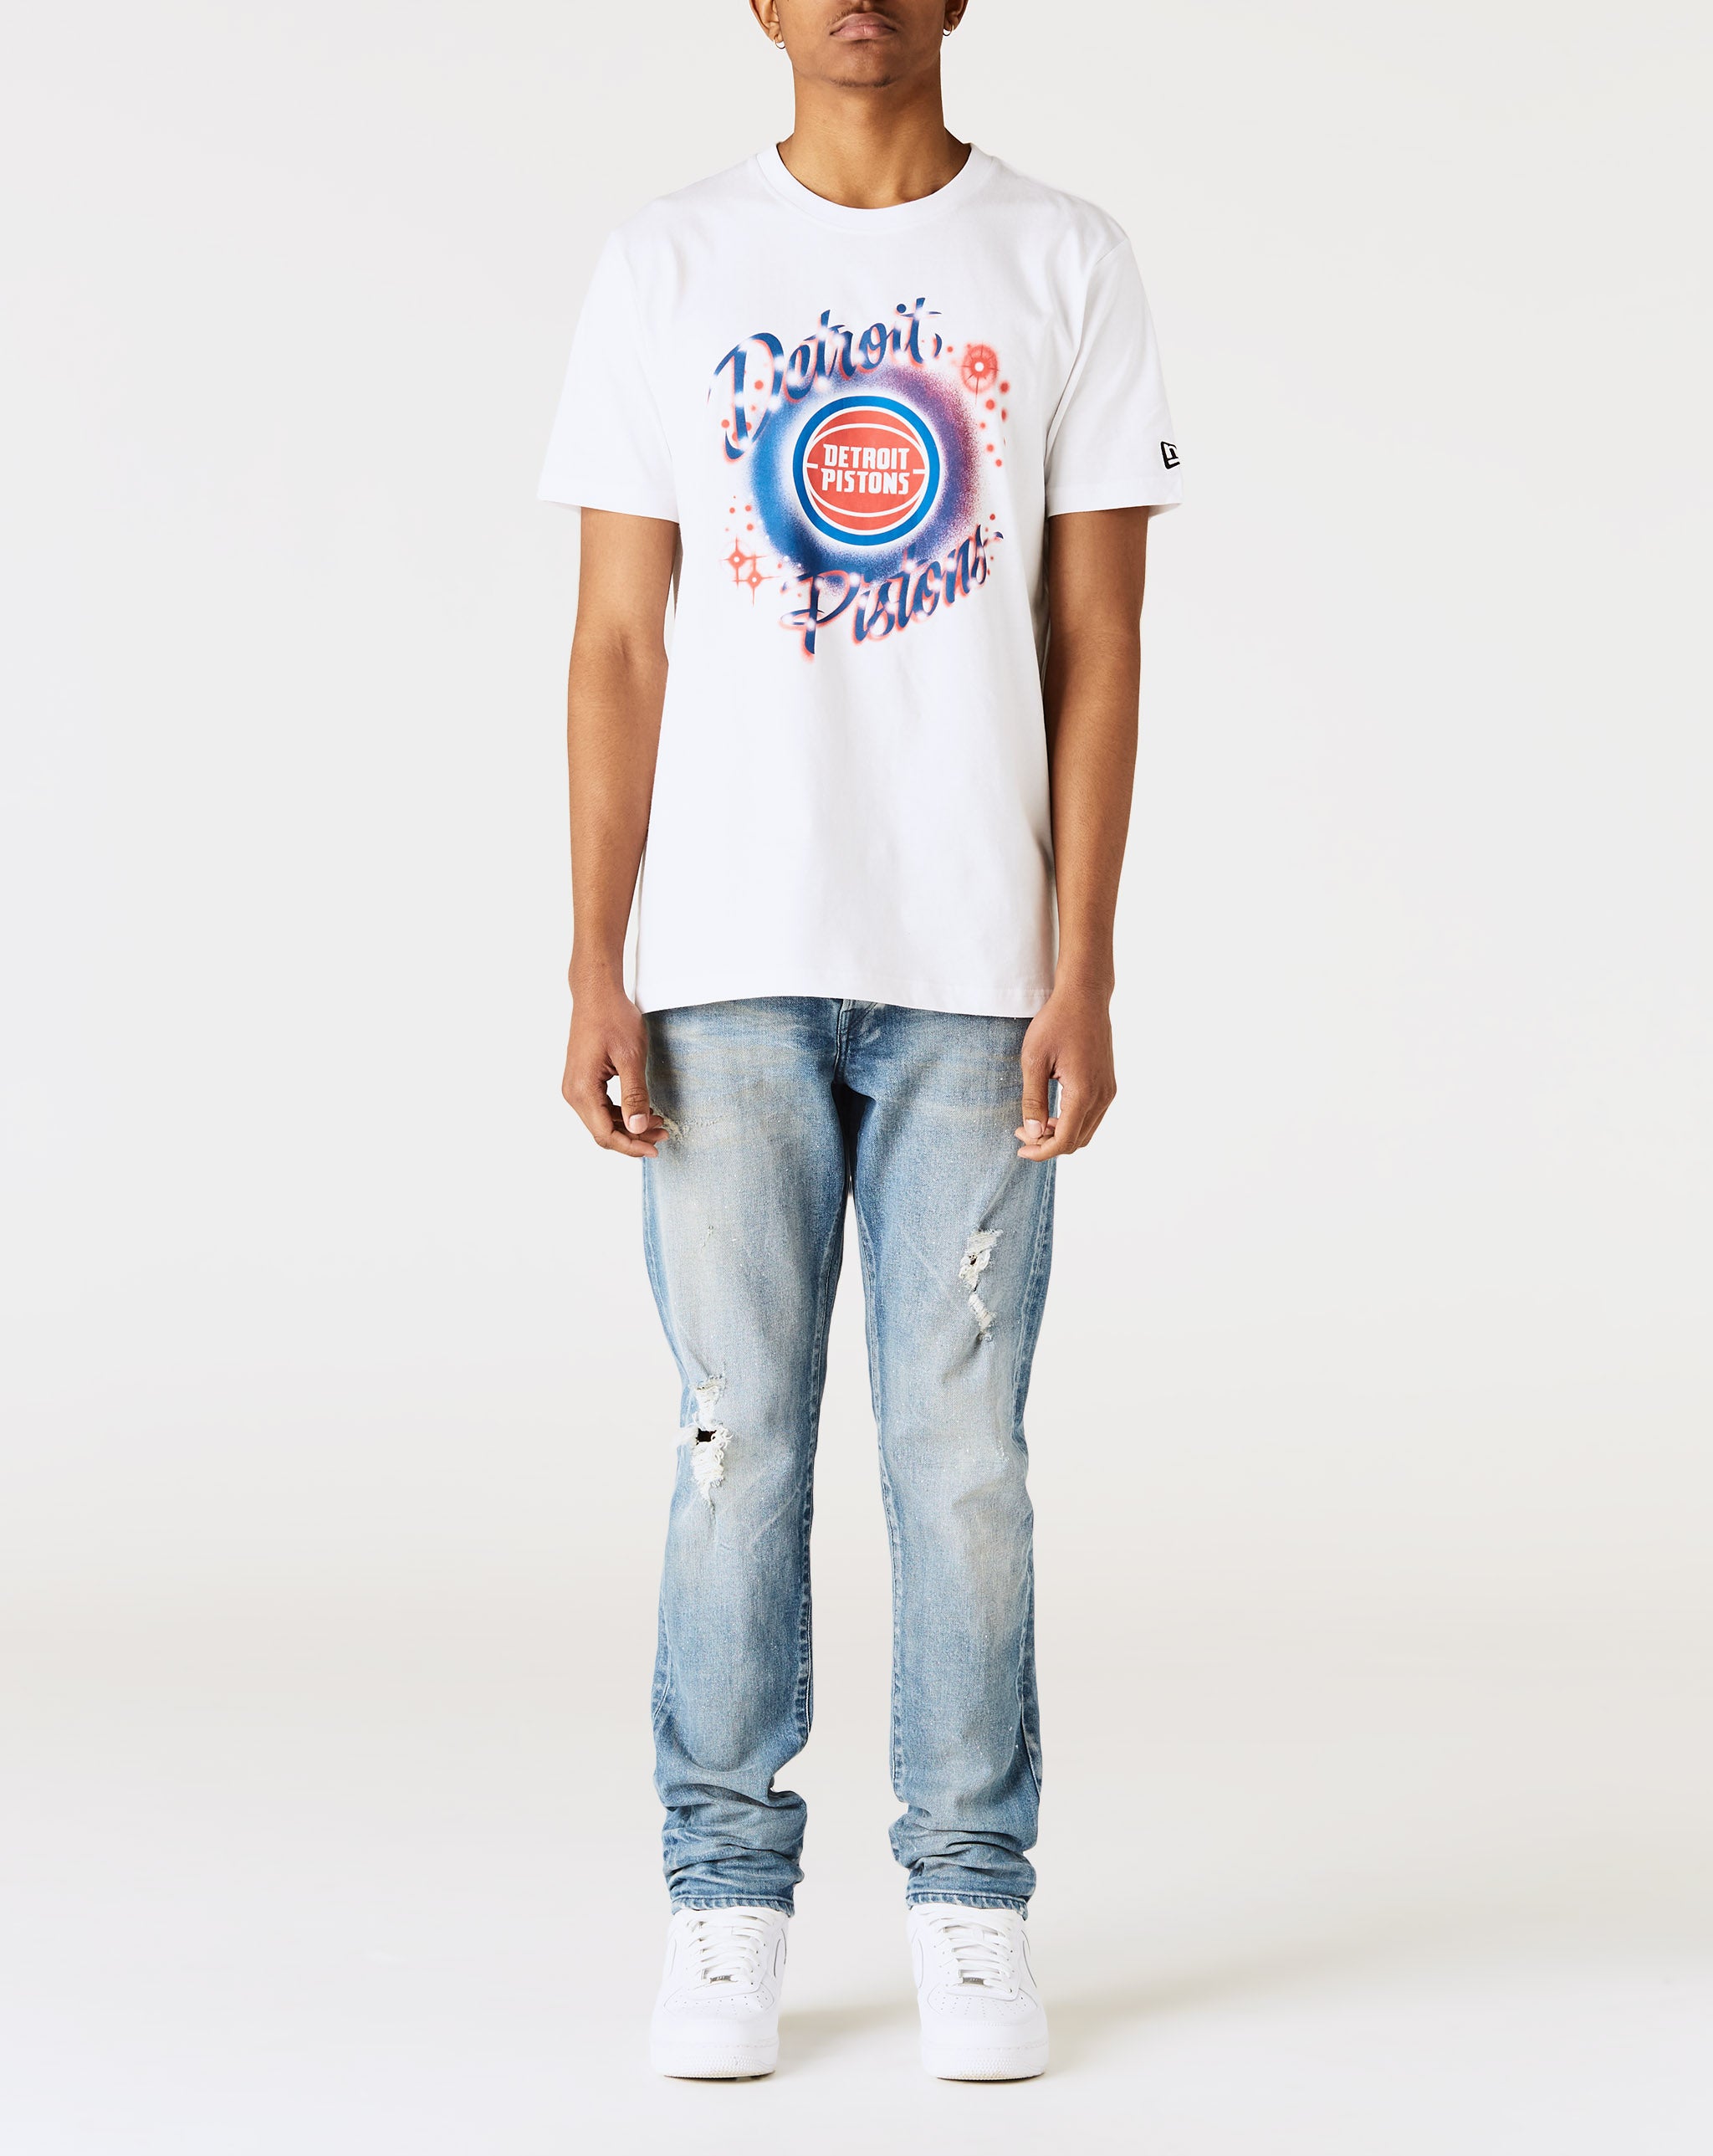 New Era Awake x Detroit Pistons T-Shirt  - Cheap Urlfreeze Jordan outlet